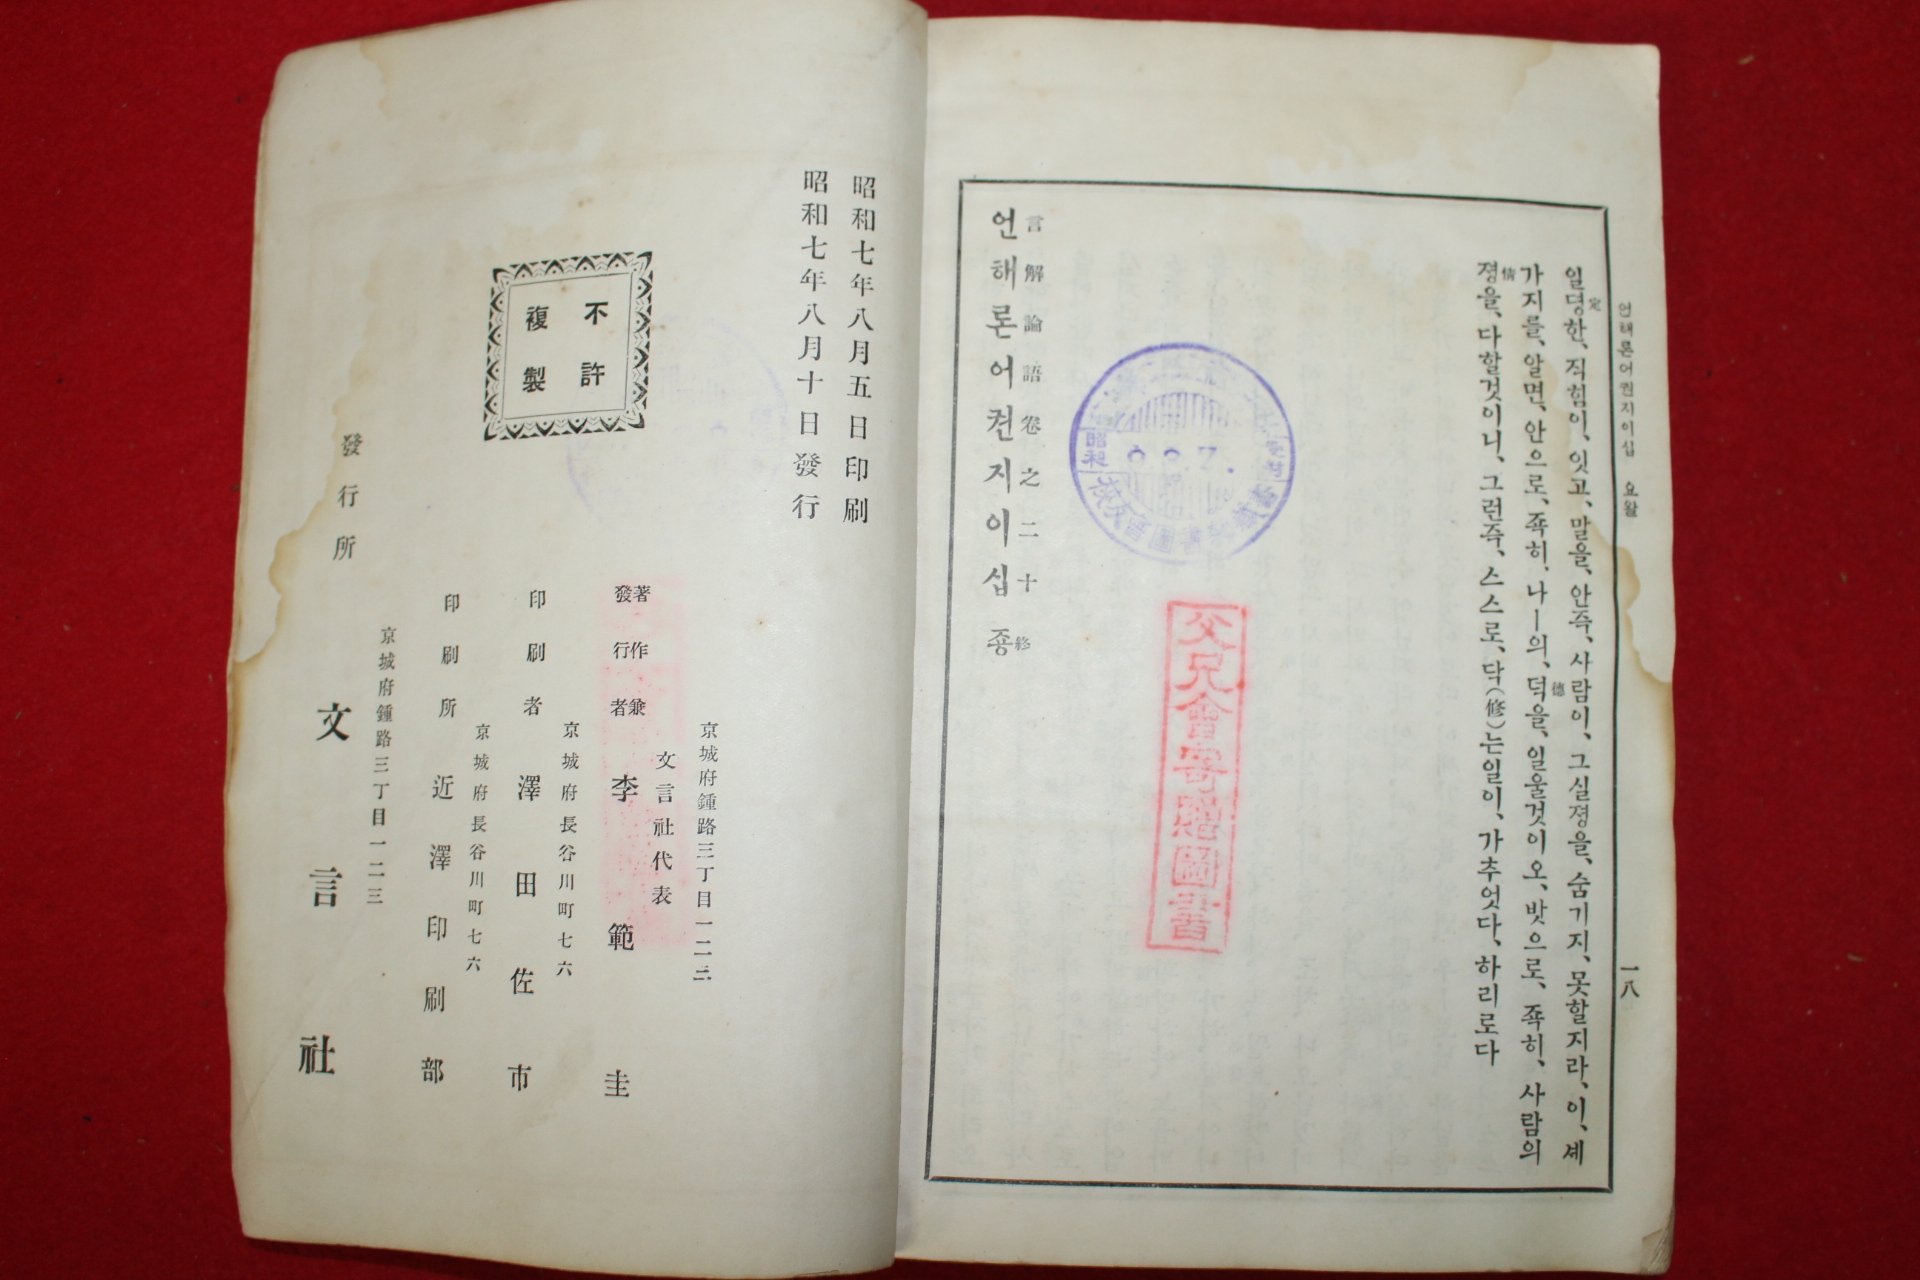 1932년(소화7년) 언해논어(言解論語)상하 2책완질